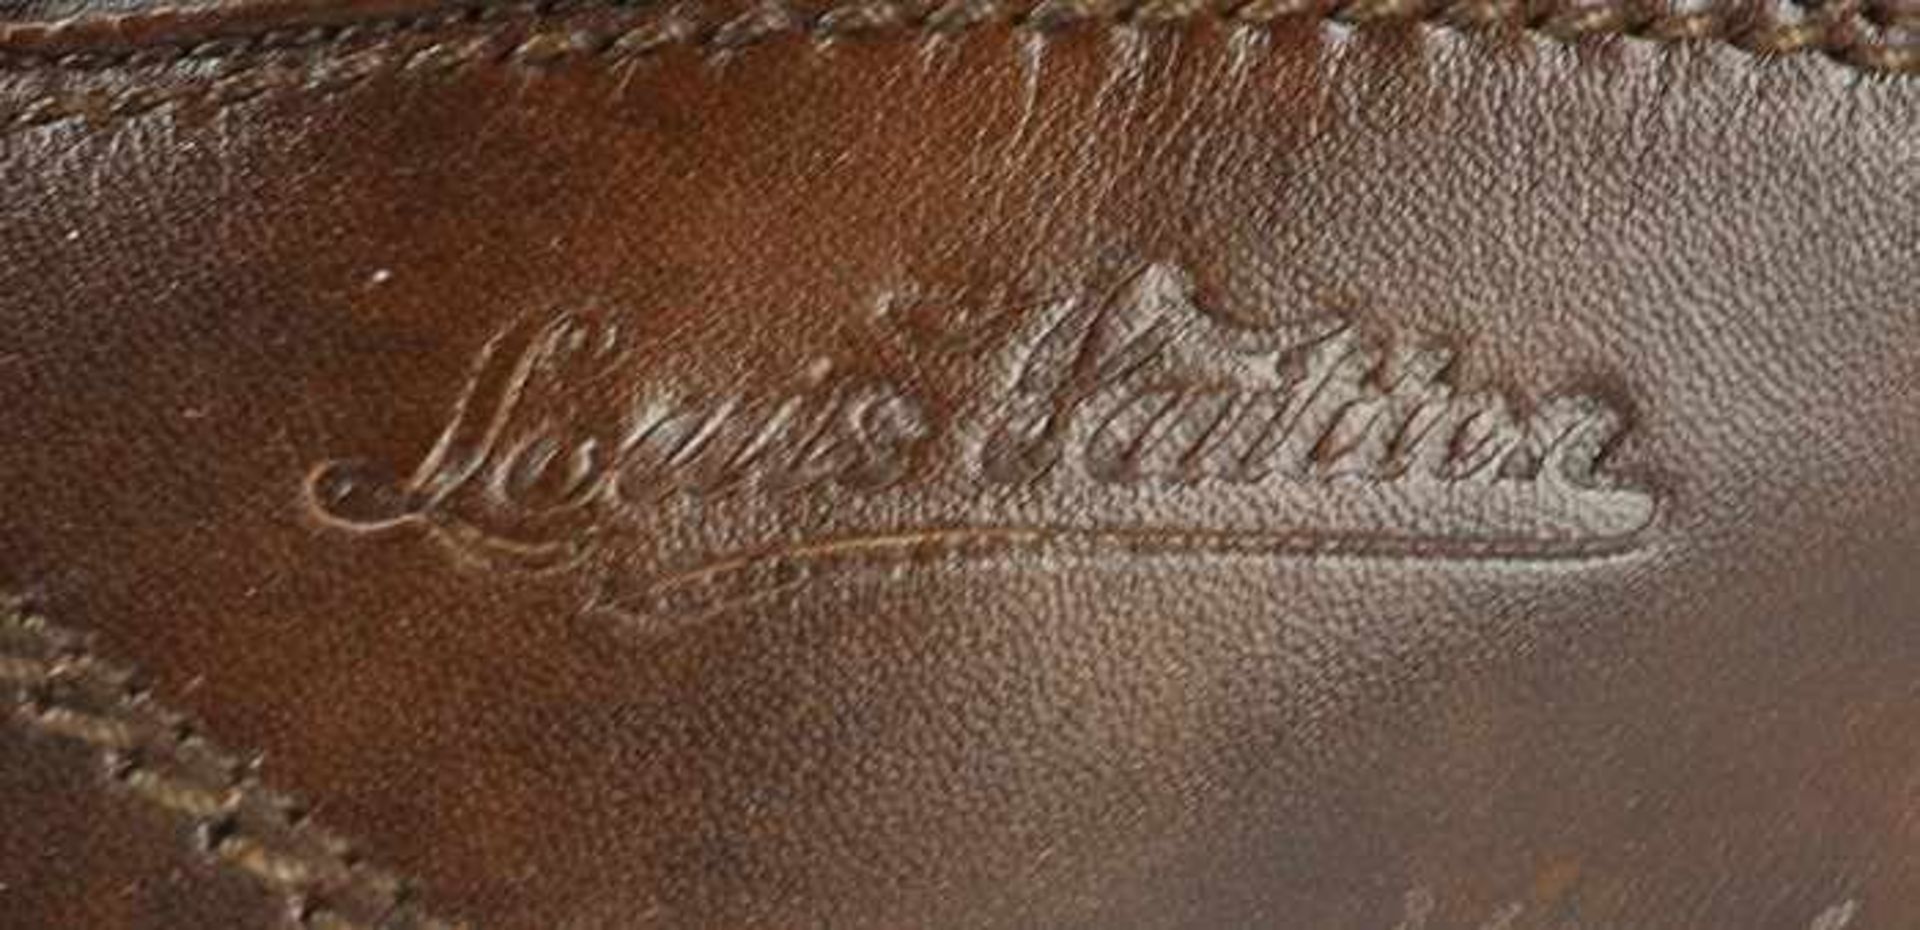 Louis Vuitton - HerrenschuheItalien, braunes Leder, sportliches Modell, OK, mit Staubbeutel u. - Bild 3 aus 8